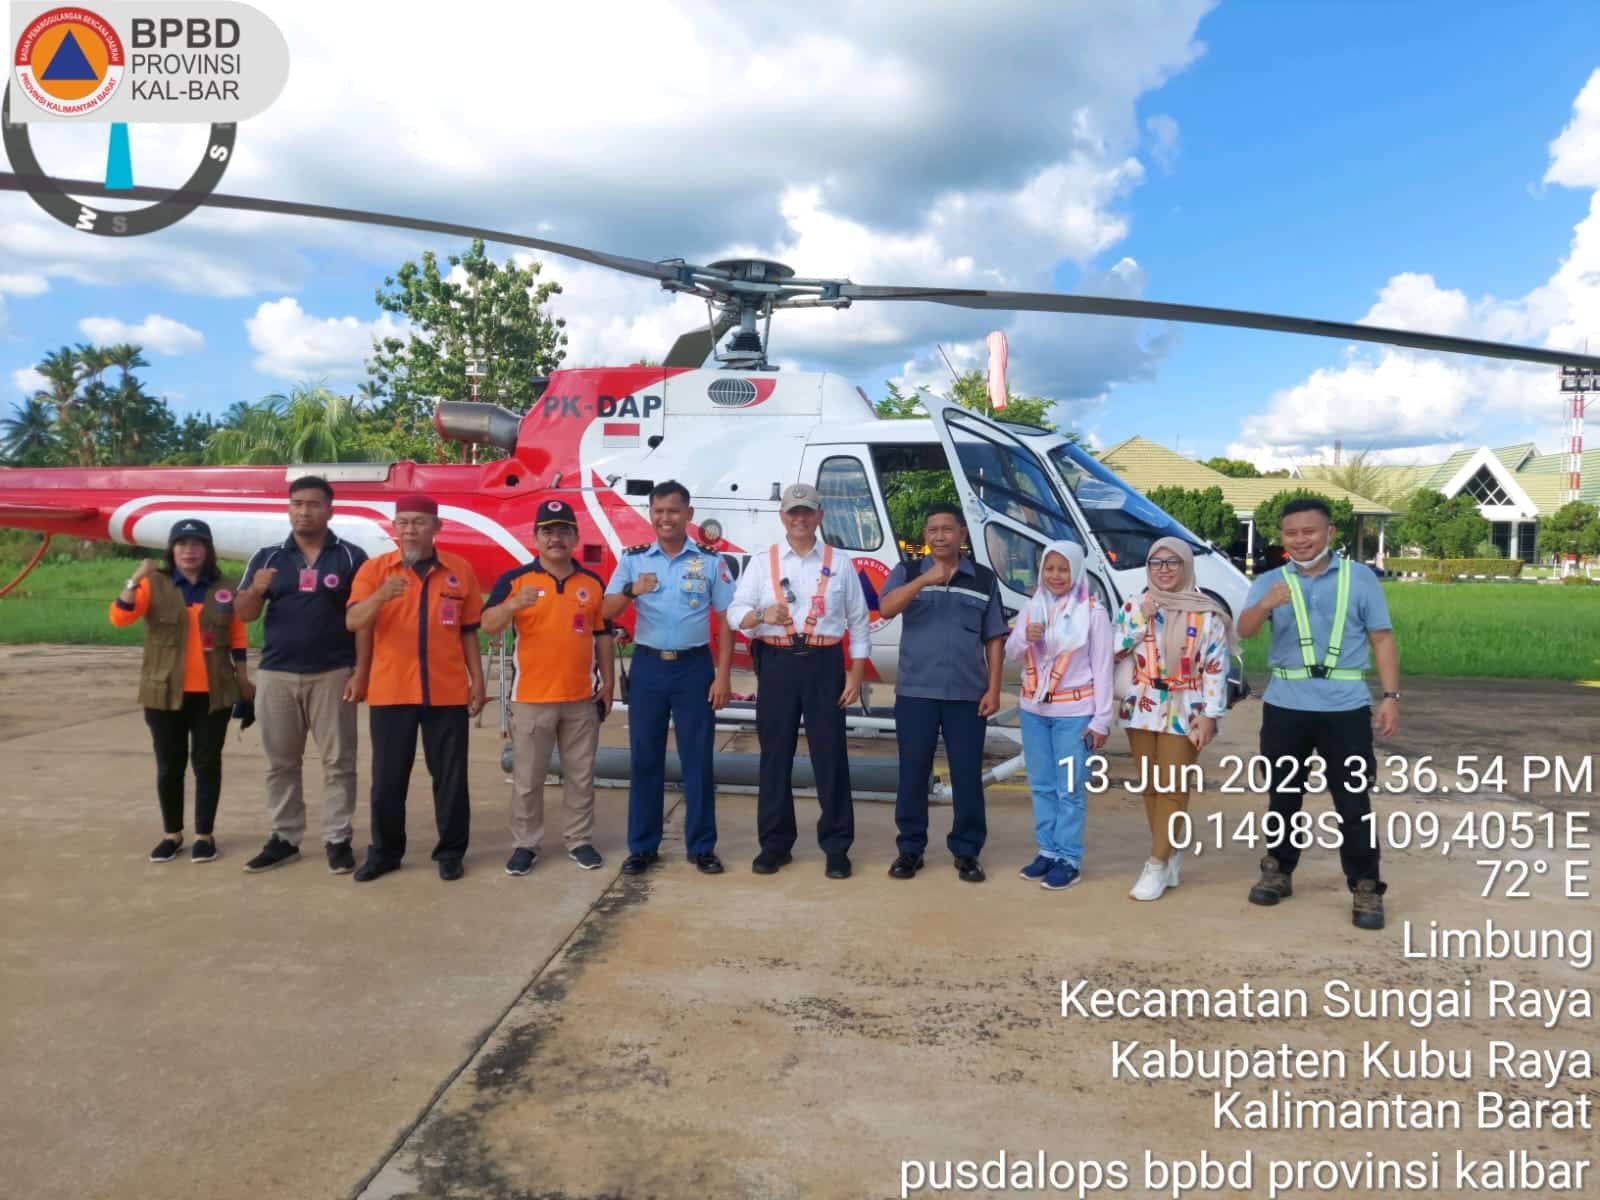 Helikopter patroli karhutla bantuan BNPB untuk wilayah Kabupaten Ketapang dan sekitarnya. (Foto: Indri)